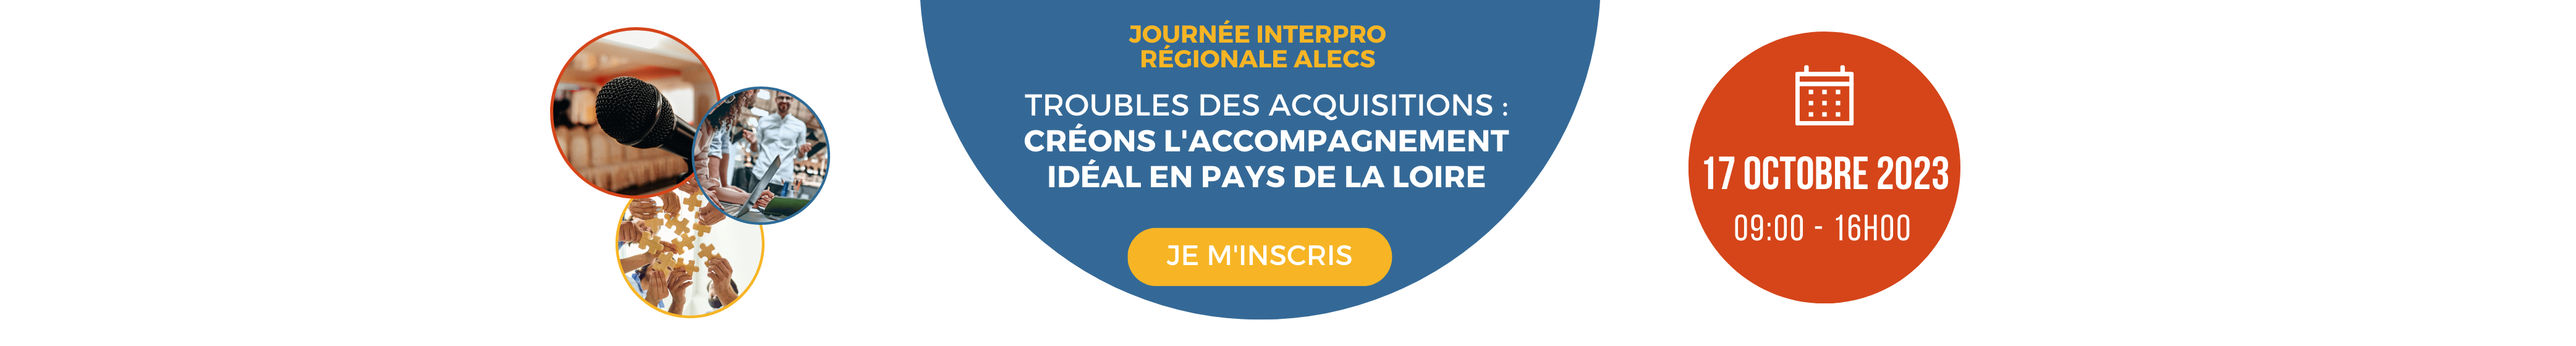 Bannière avec bouton pour s'inscrire à l'Interpro d'ALECS (pour les professionnels uniquement)